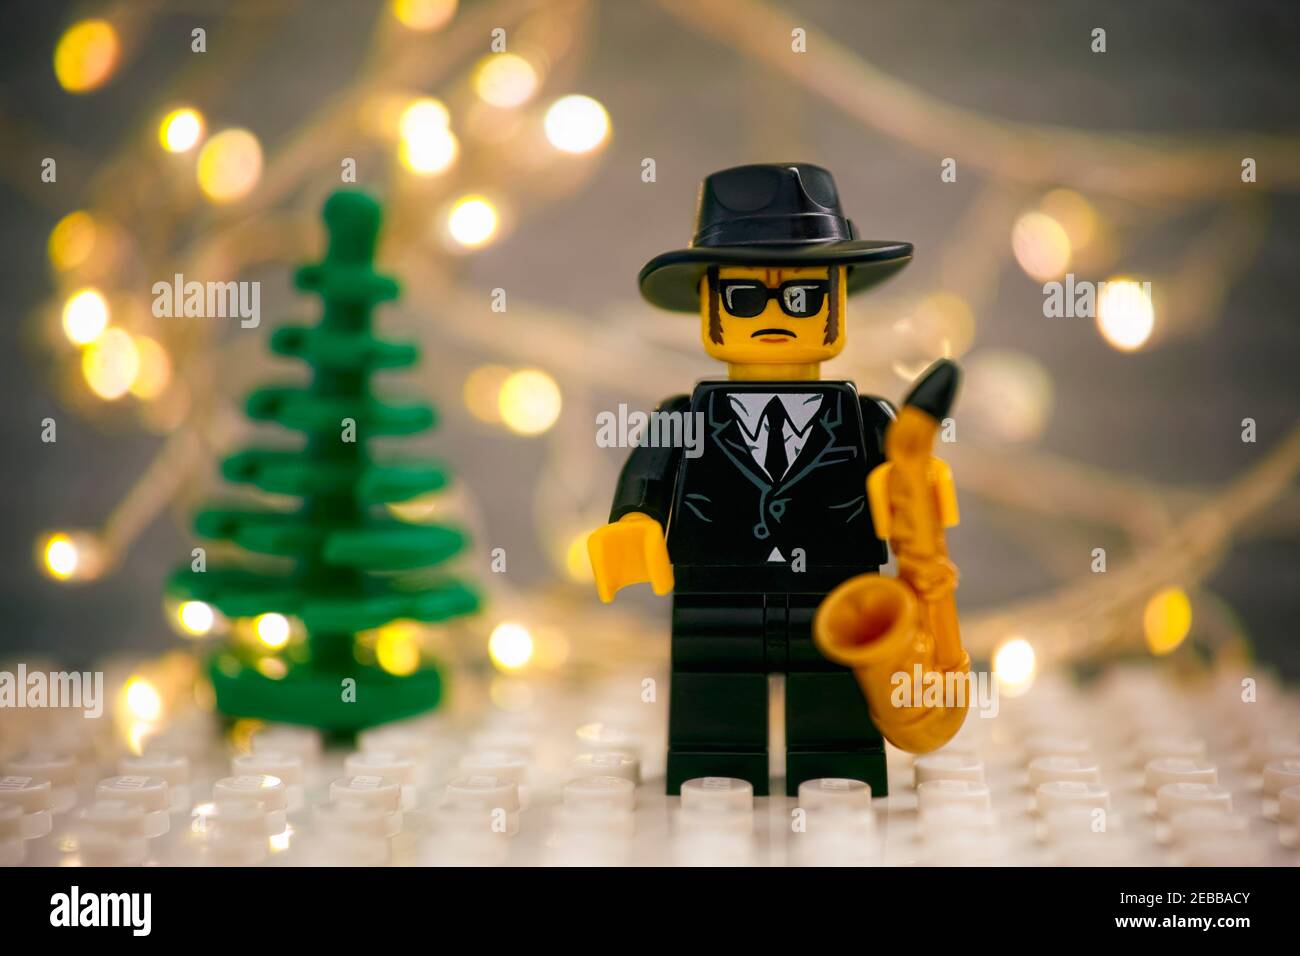 Tambov, Russische Föderation - 17. Januar 2021 Lego Jazz Musiker Minifigur  mit Saxophon gegen Weihnachtsbaum und weihnachtlichen hellen Hintergrund  Stockfotografie - Alamy